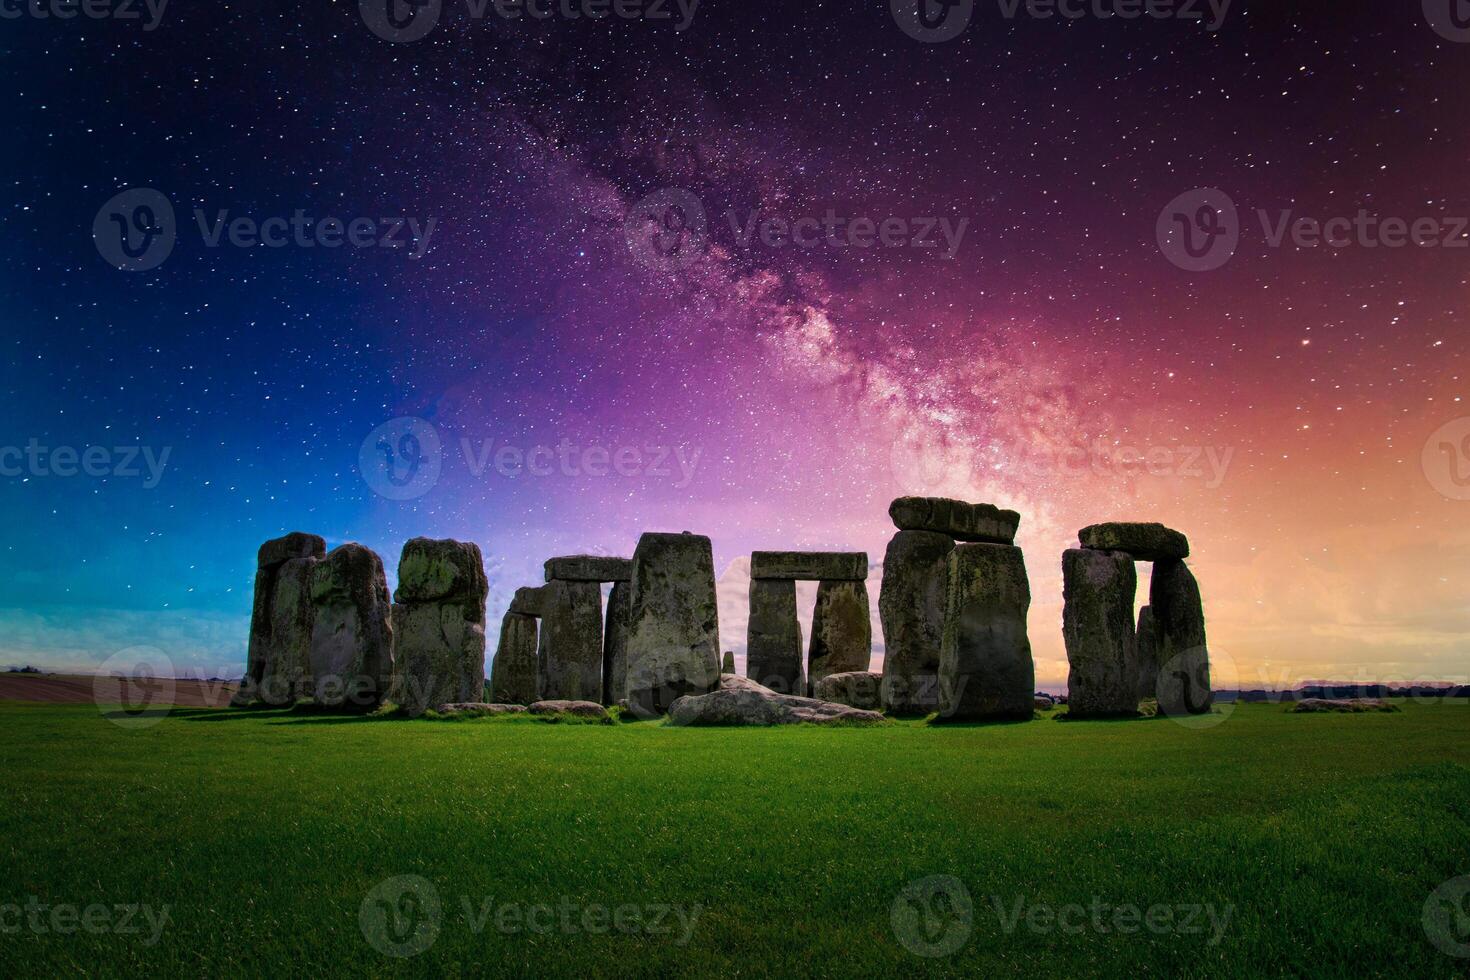 panorama imagem do leitoso caminho galáxia às noite céu com estrelas sobre stonehenge a antigo pré-histórico pedra monumento, Wiltshire, Reino Unido. foto